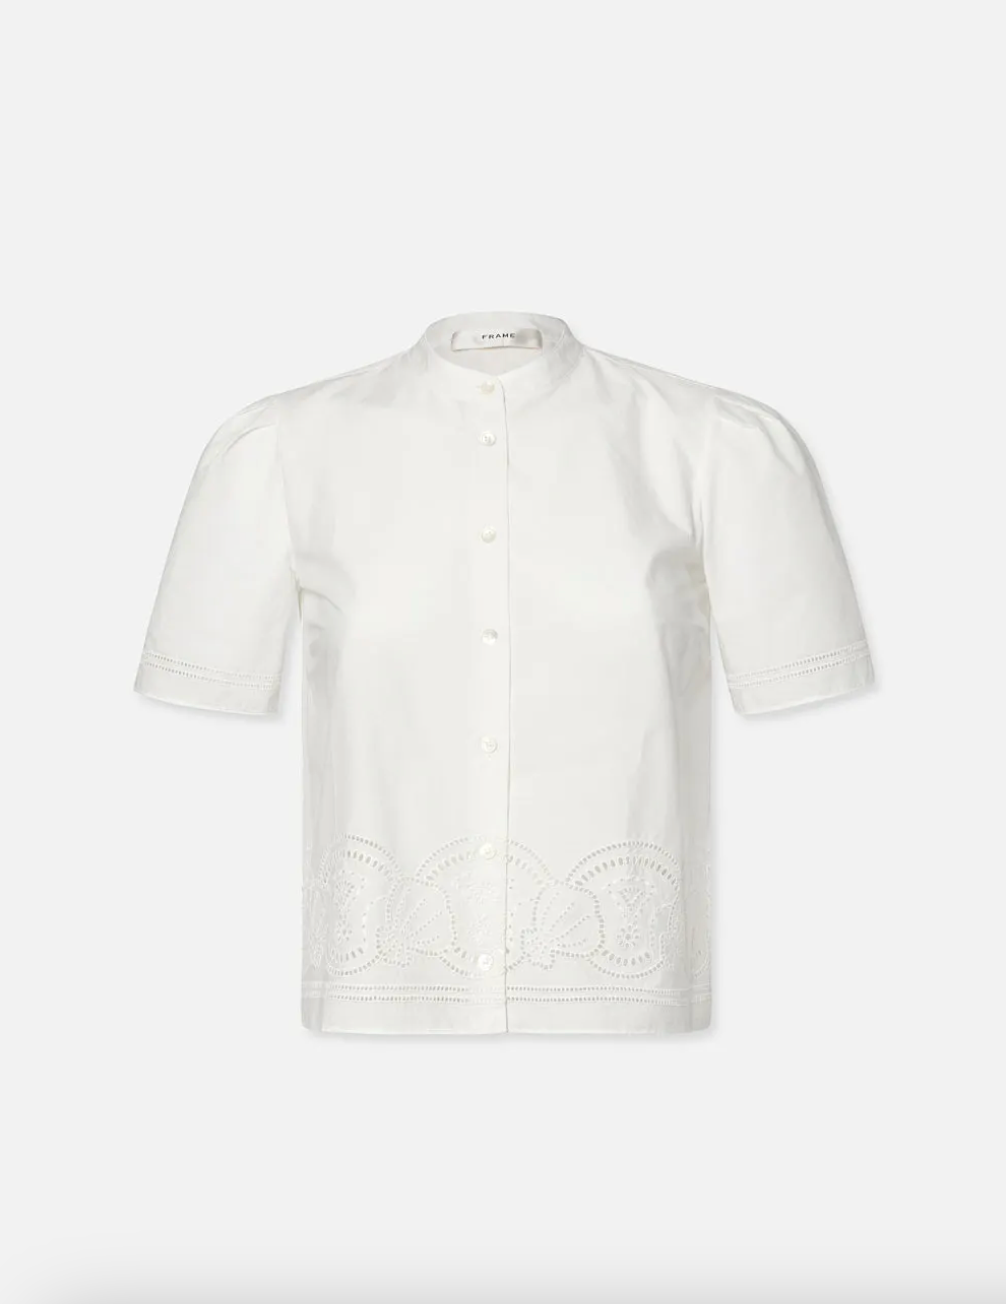 FRAME - Embroidered Short Sleeve Shirt - White